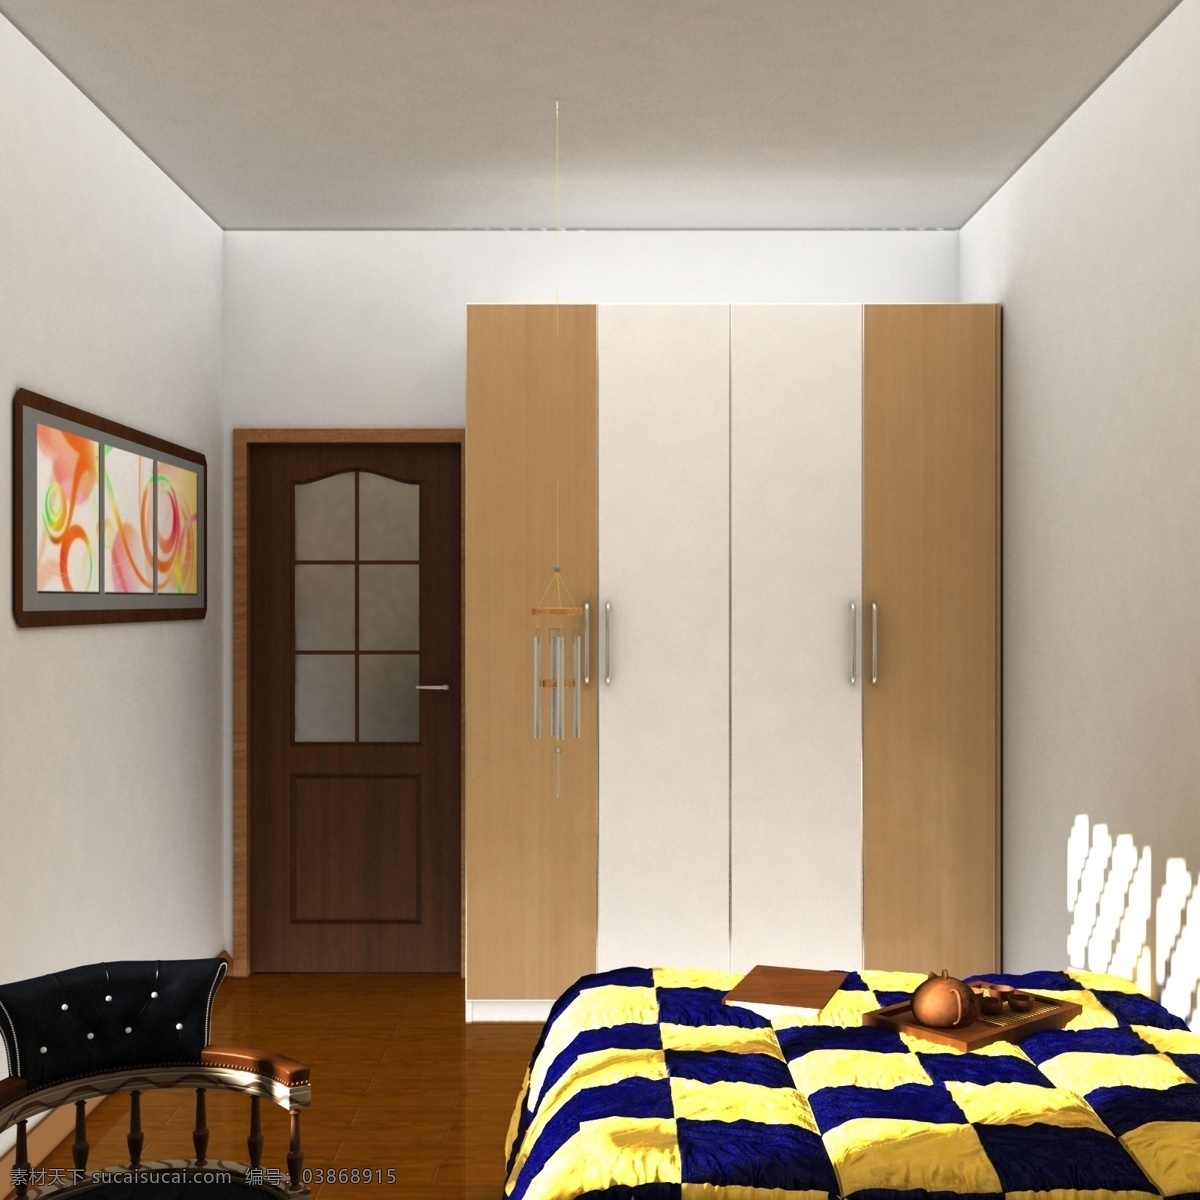 现代 家居 环境设计 室内设计 现代家居 家居设计 模板下载 侧卧 家居装饰素材